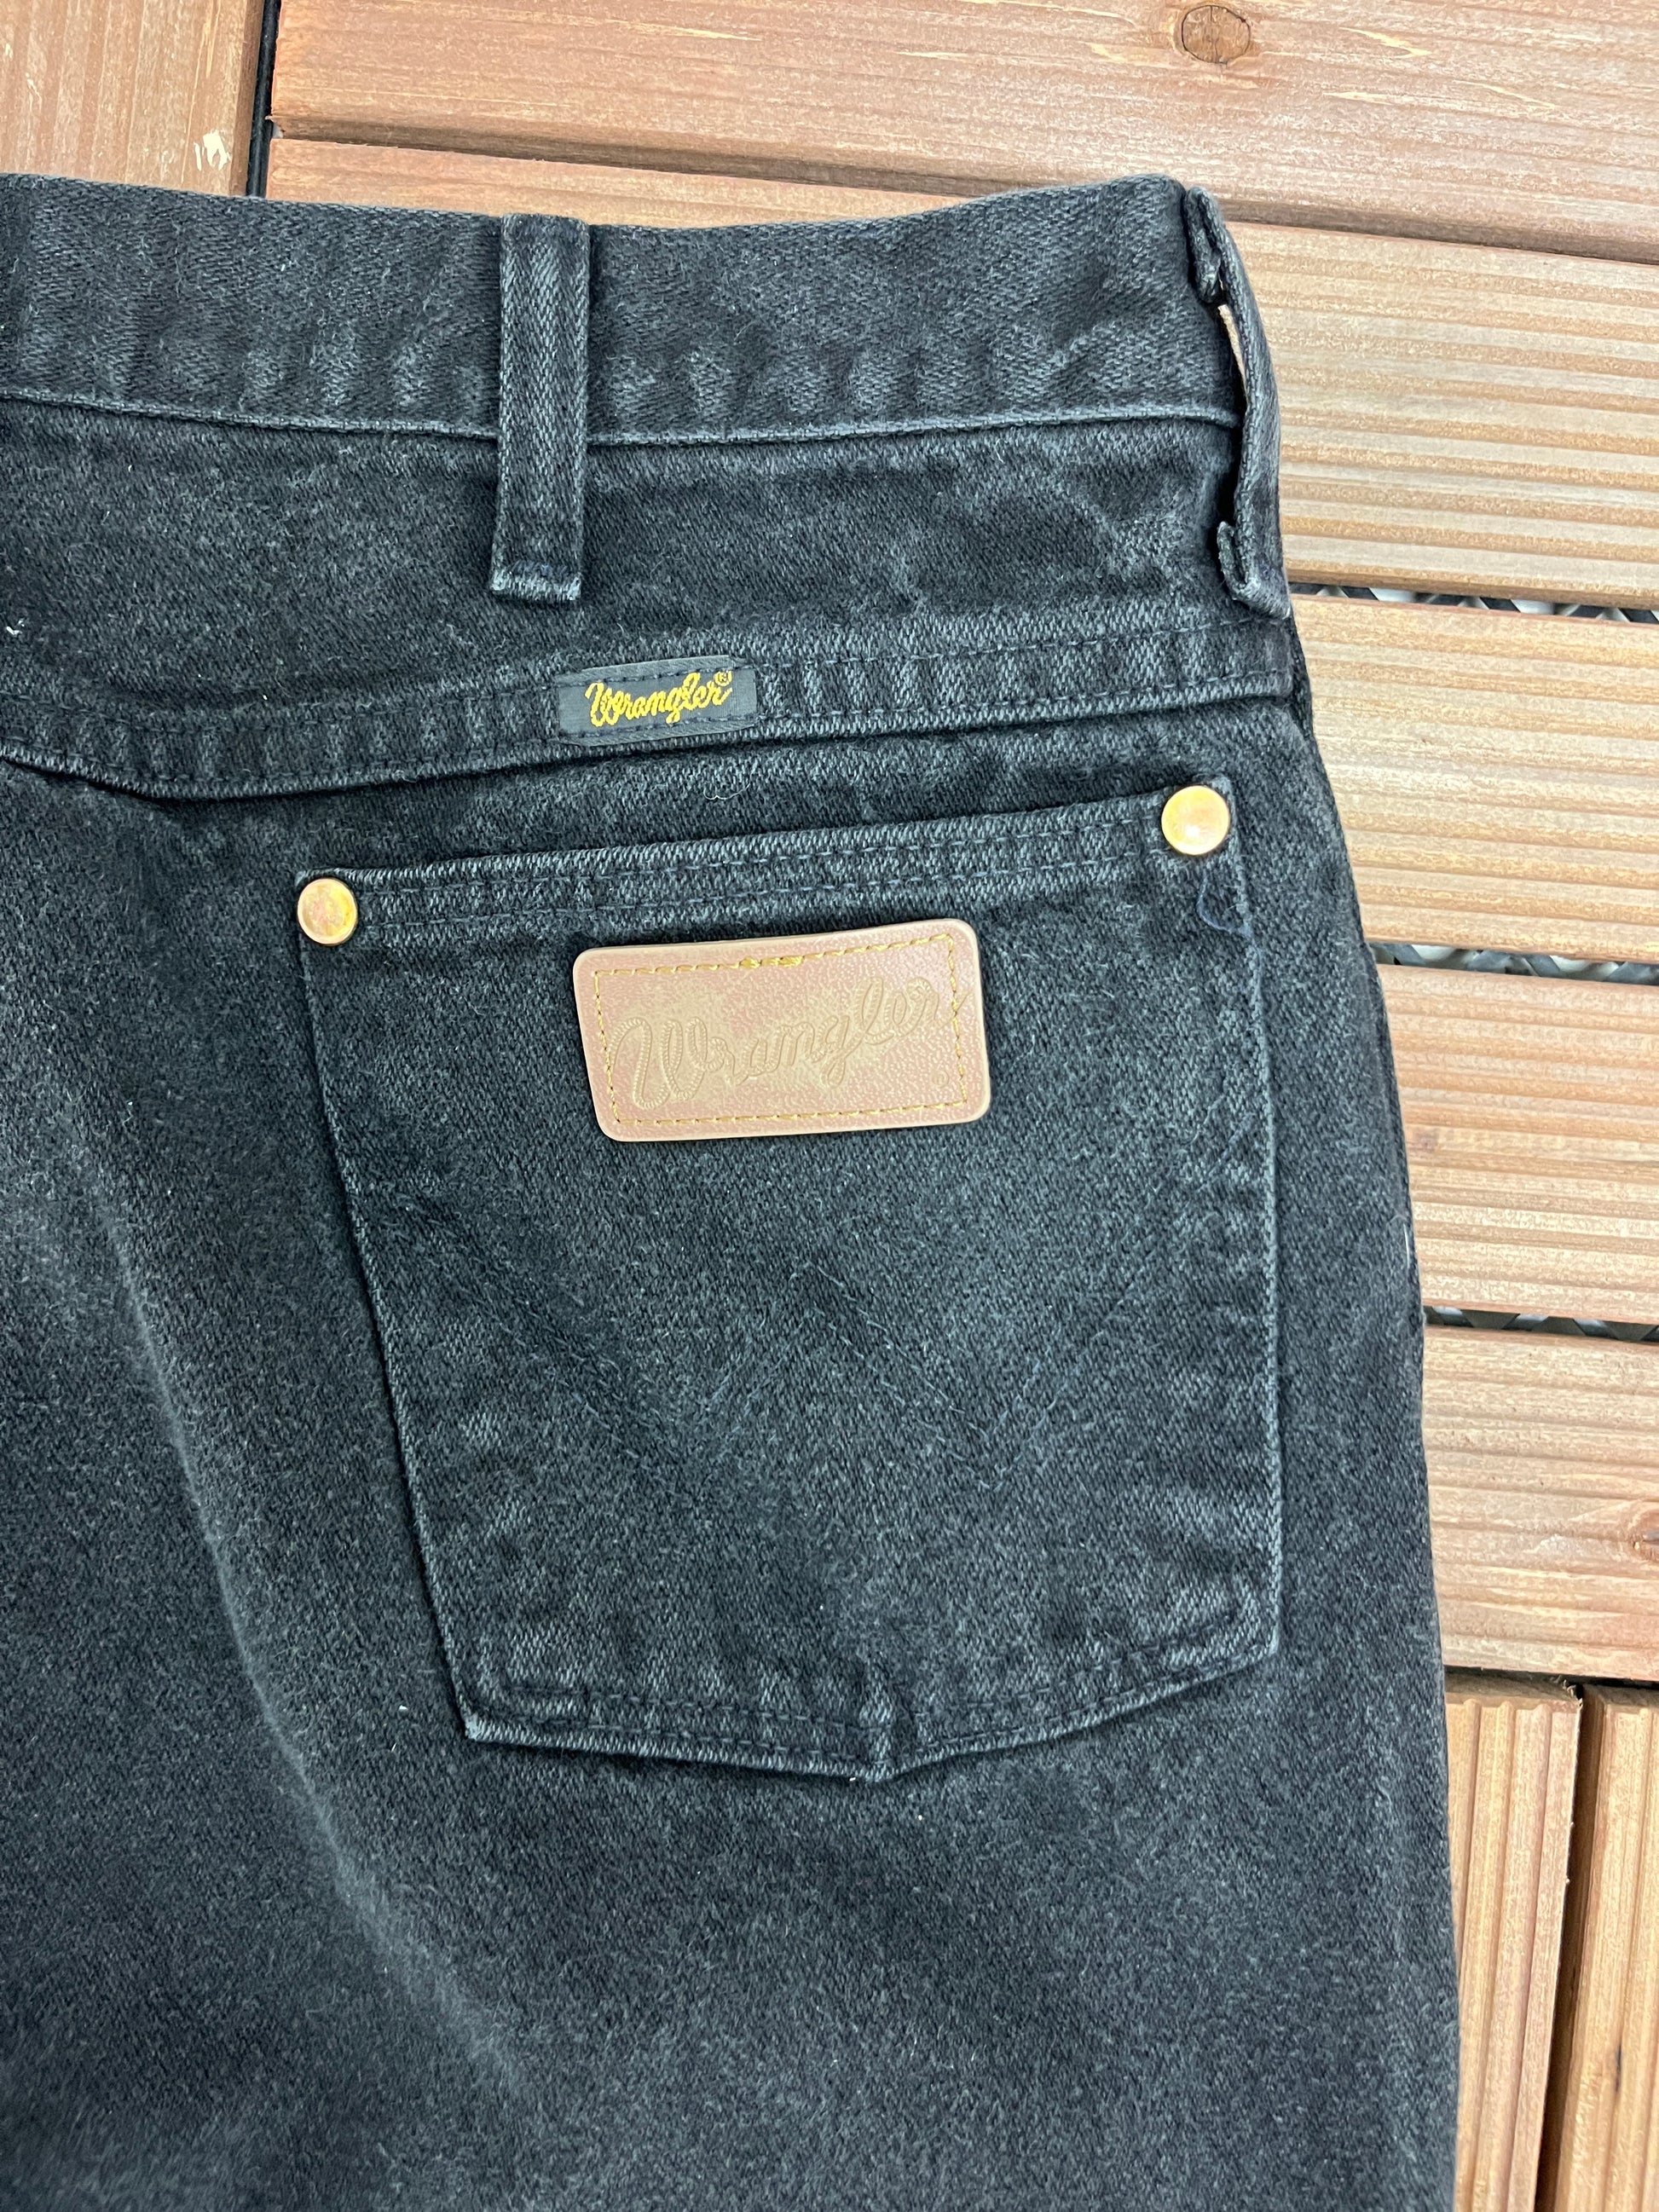 Wrangler Cowboy Cut Fit Black Jeans, Size 36 x 32